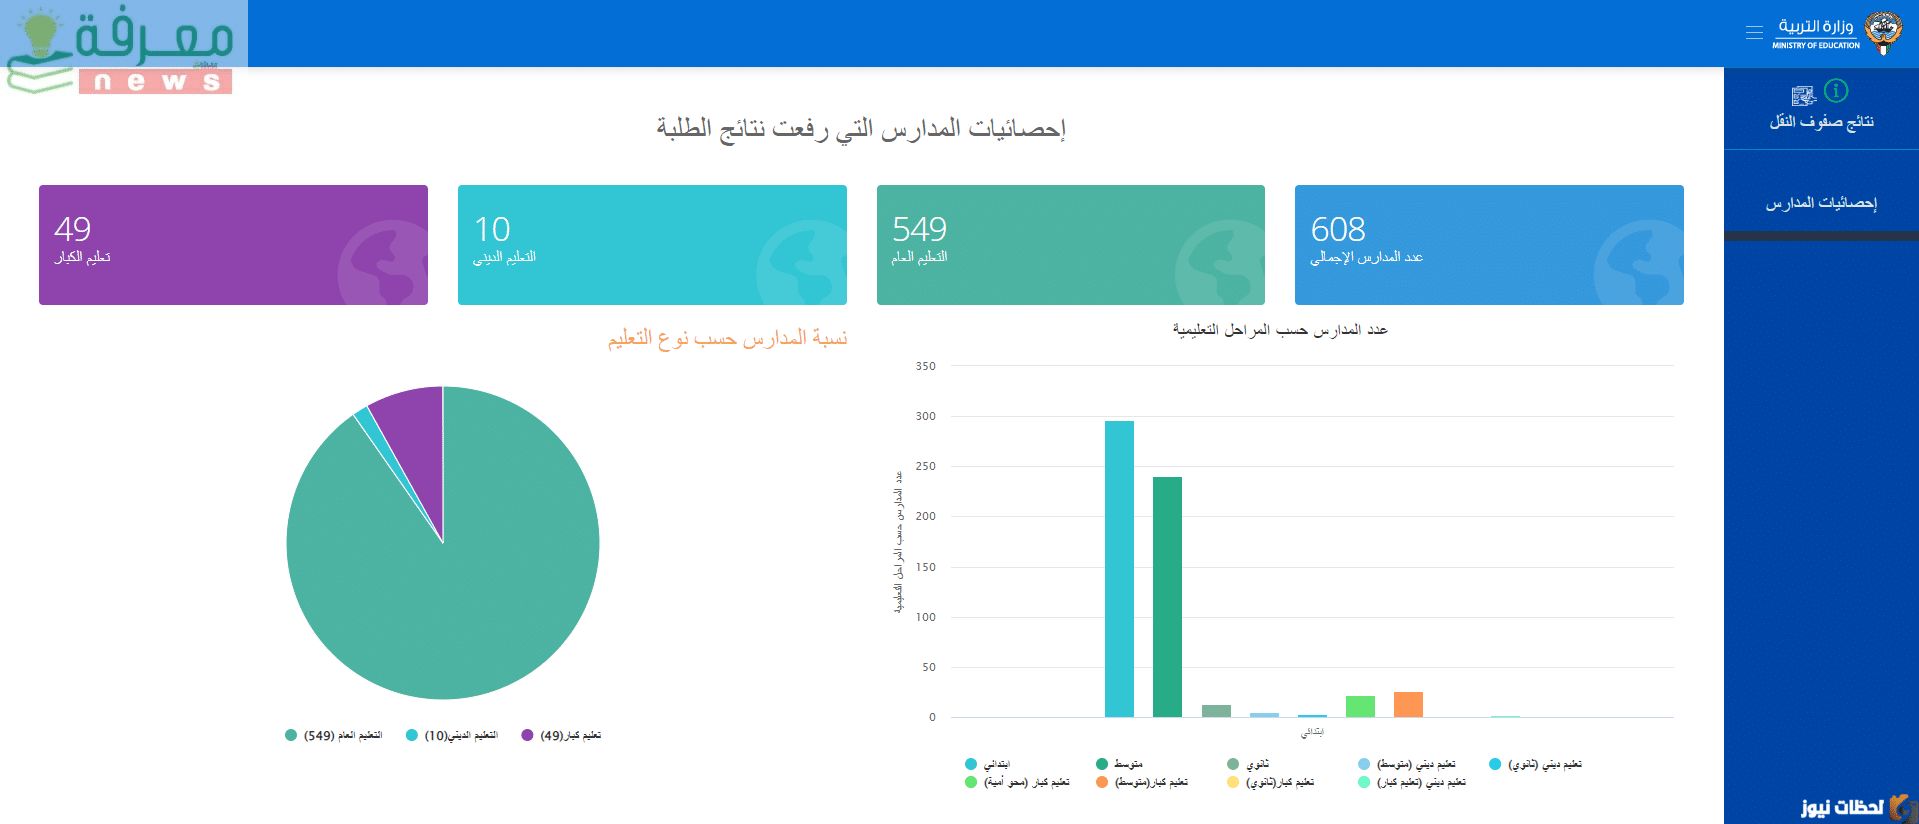 المدارس التي رفعت النتائج الكويت مبارك الكبير